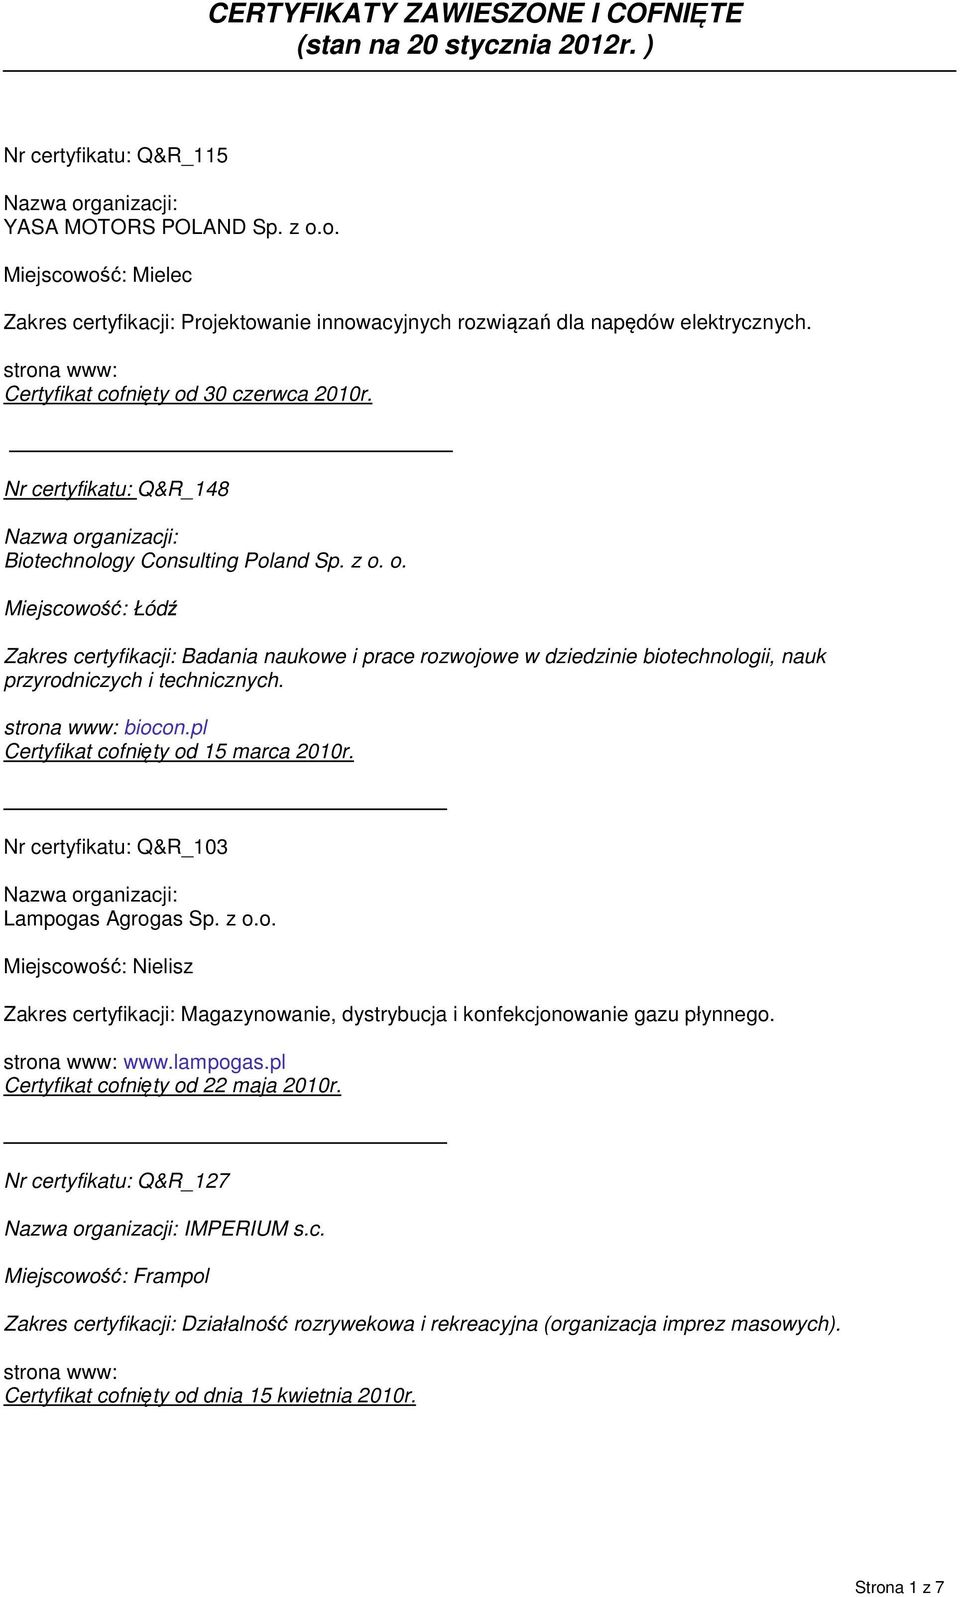 strona www: biocon.pl Certyfikat cofnięty od 15 marca 2010r. Nr certyfikatu: Q&R_103 Lampogas Agrogas Sp. z o.o. Miejscowość: Nielisz Zakres certyfikacji: Magazynowanie, dystrybucja i konfekcjonowanie gazu płynnego.